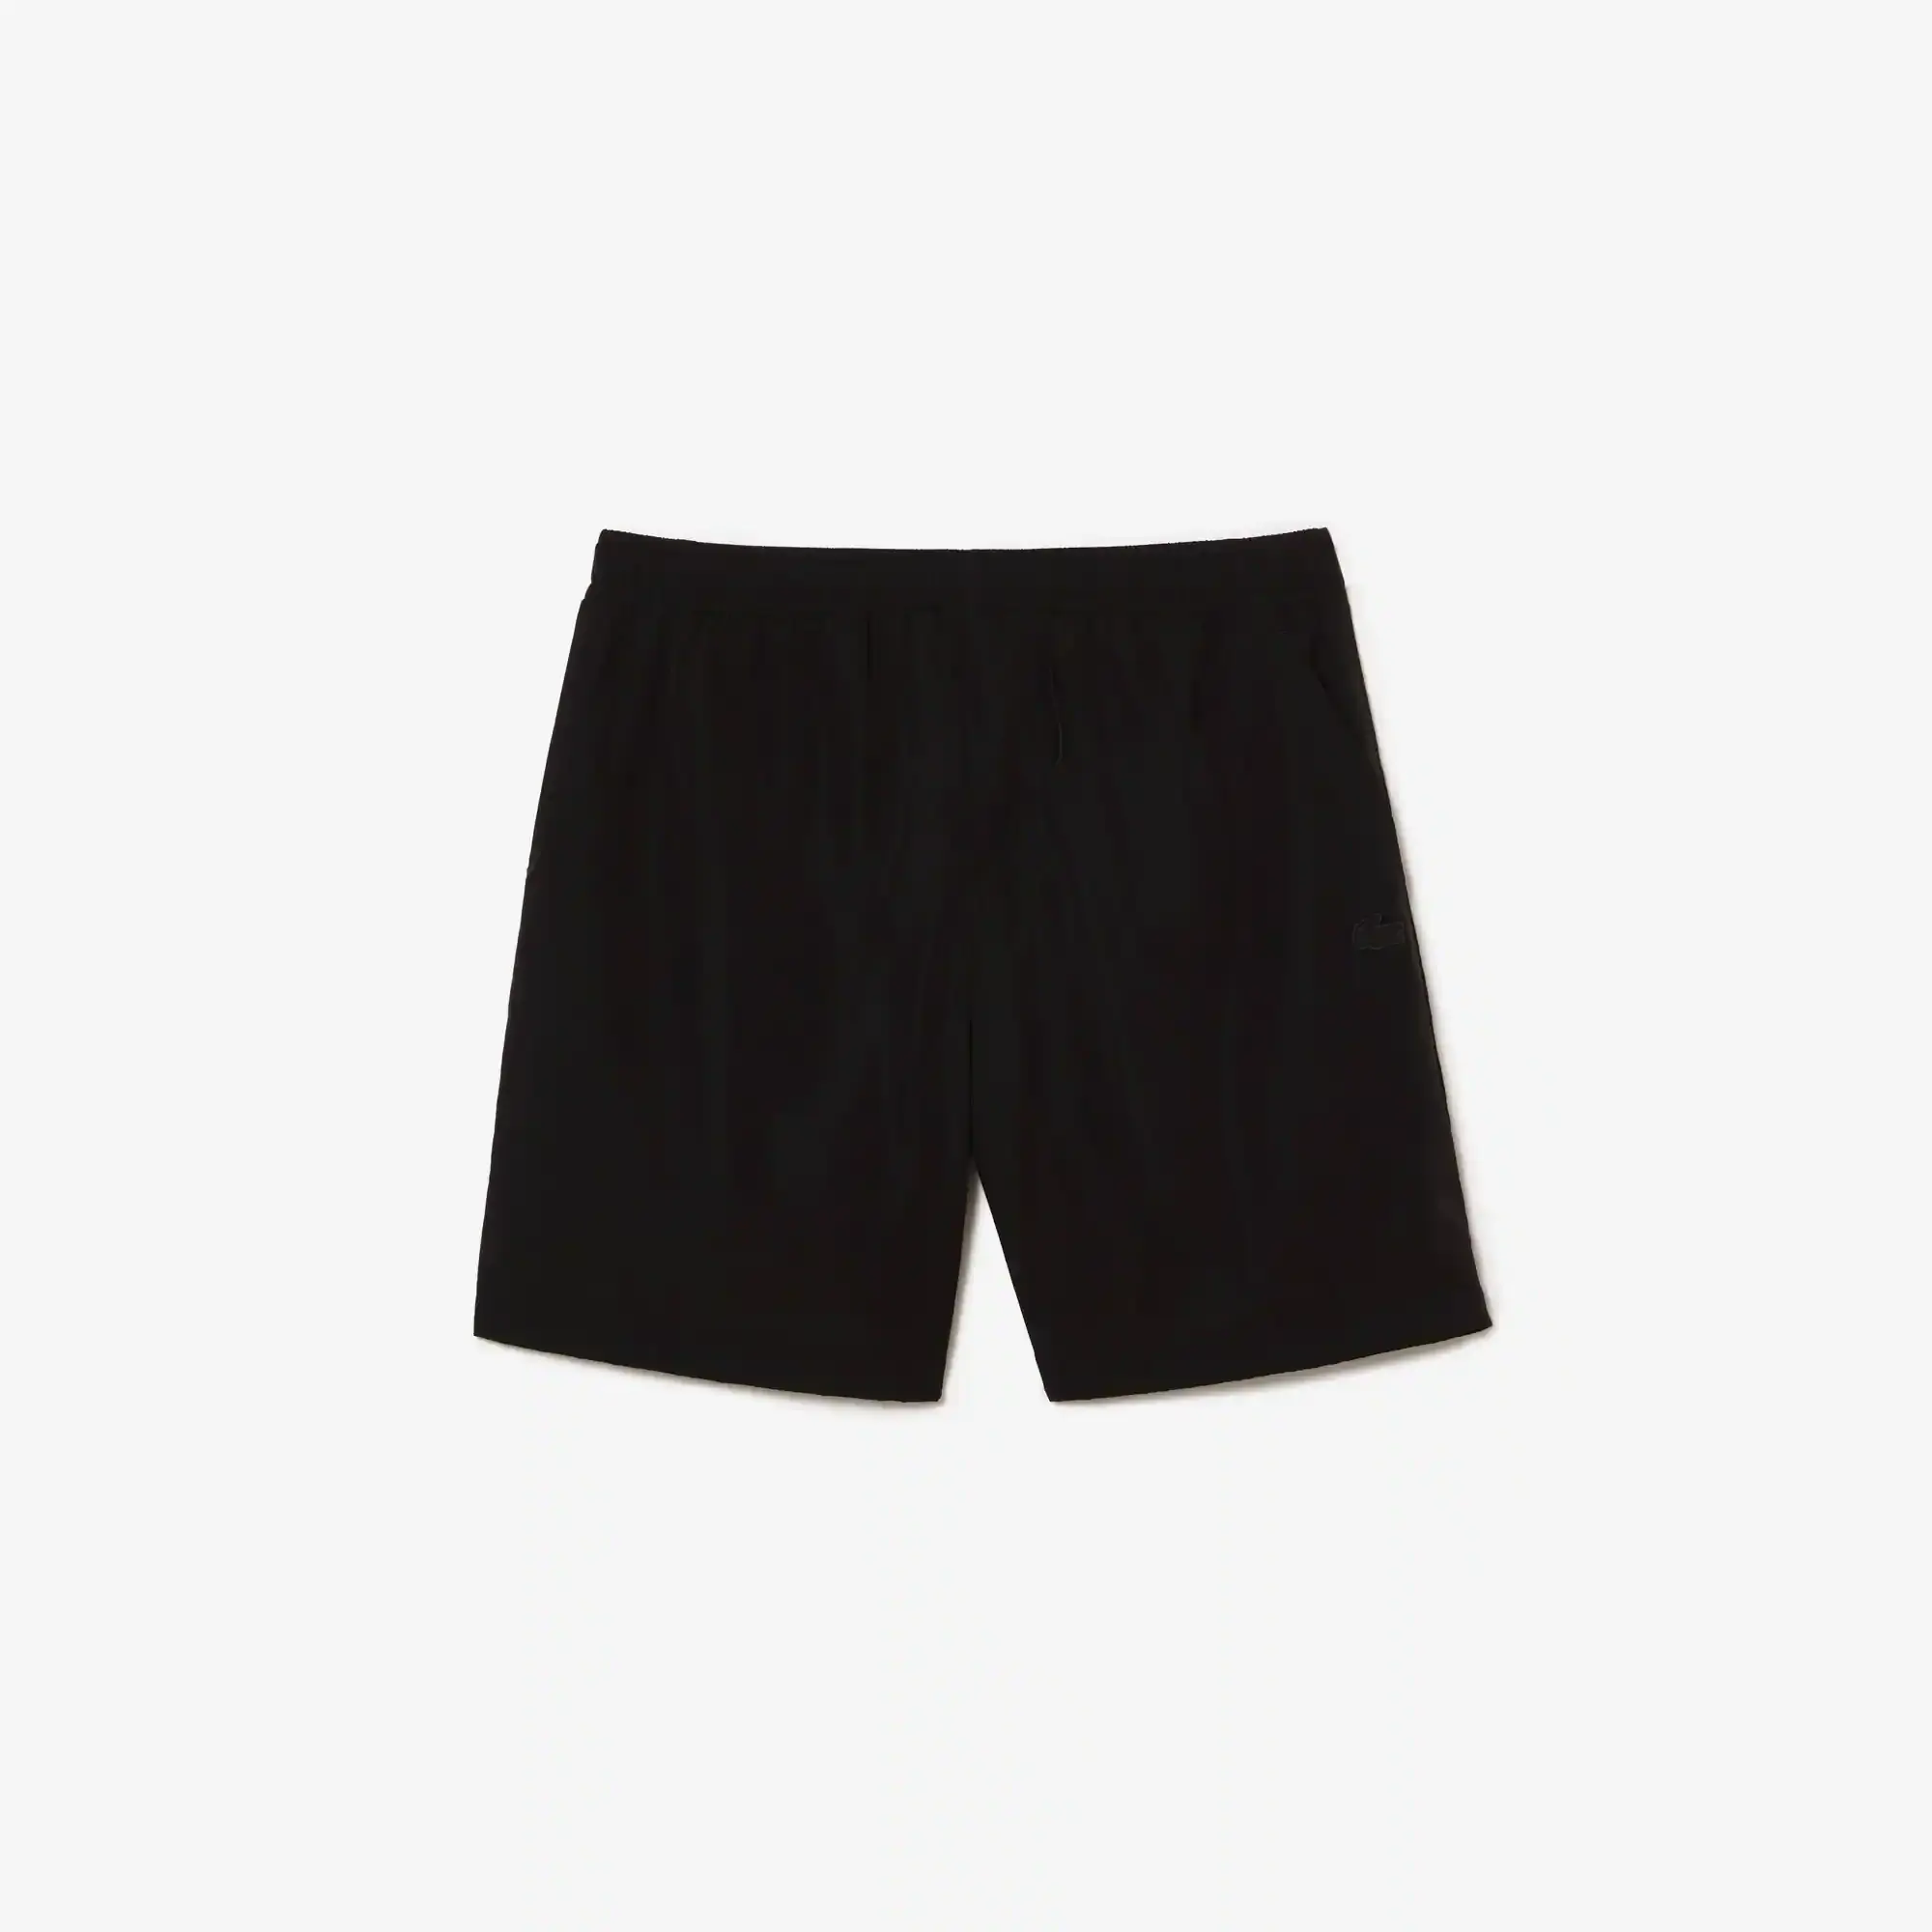 Lacoste Men’s Waterproof Shorts. 2